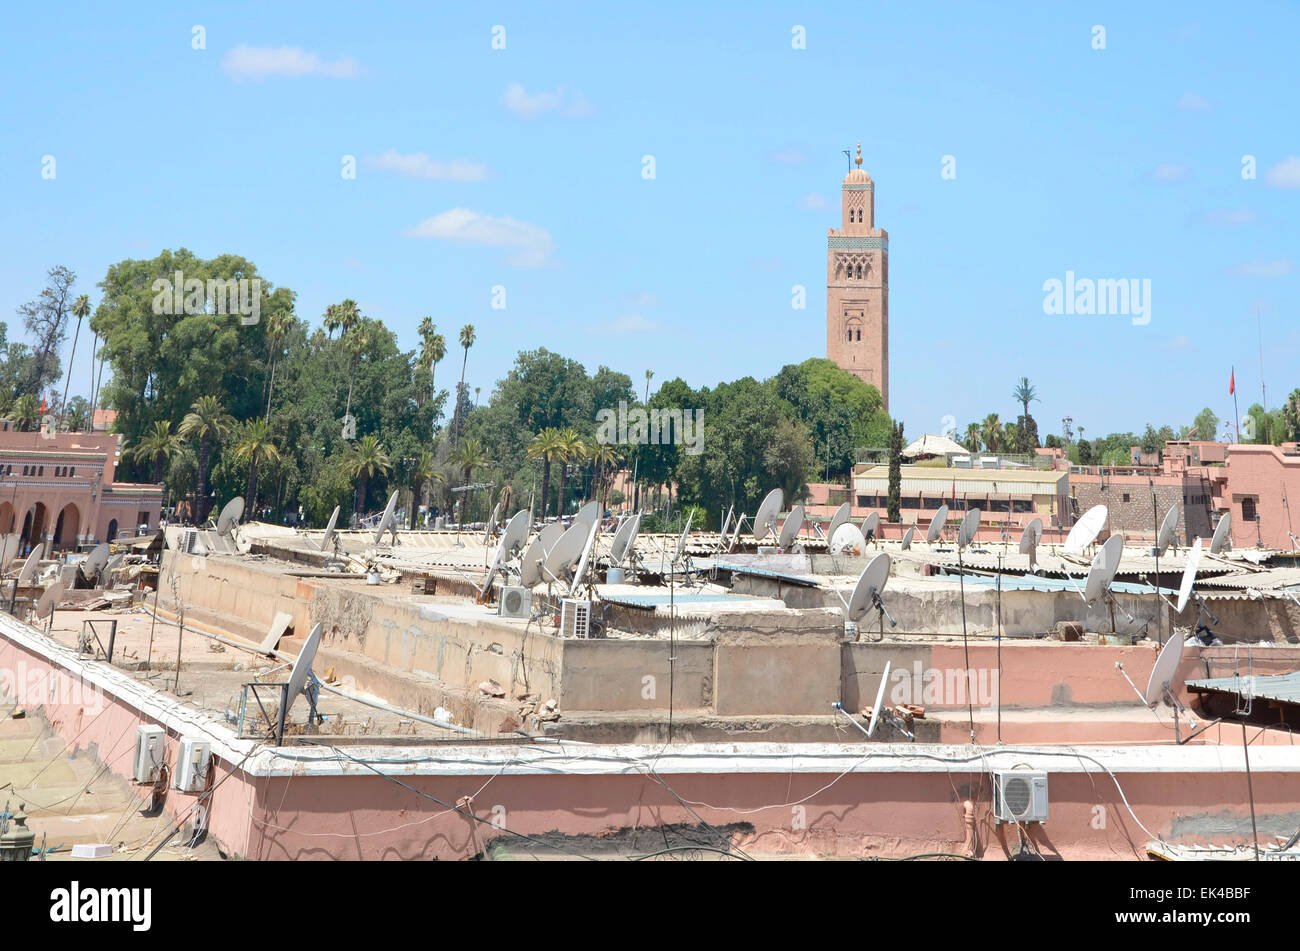 Moderni piatti Satellite contrasto alla vecchia città antica moschea con torre dall'Djemaa el Fna a Marrakech, Marocco, Africa Foto Stock